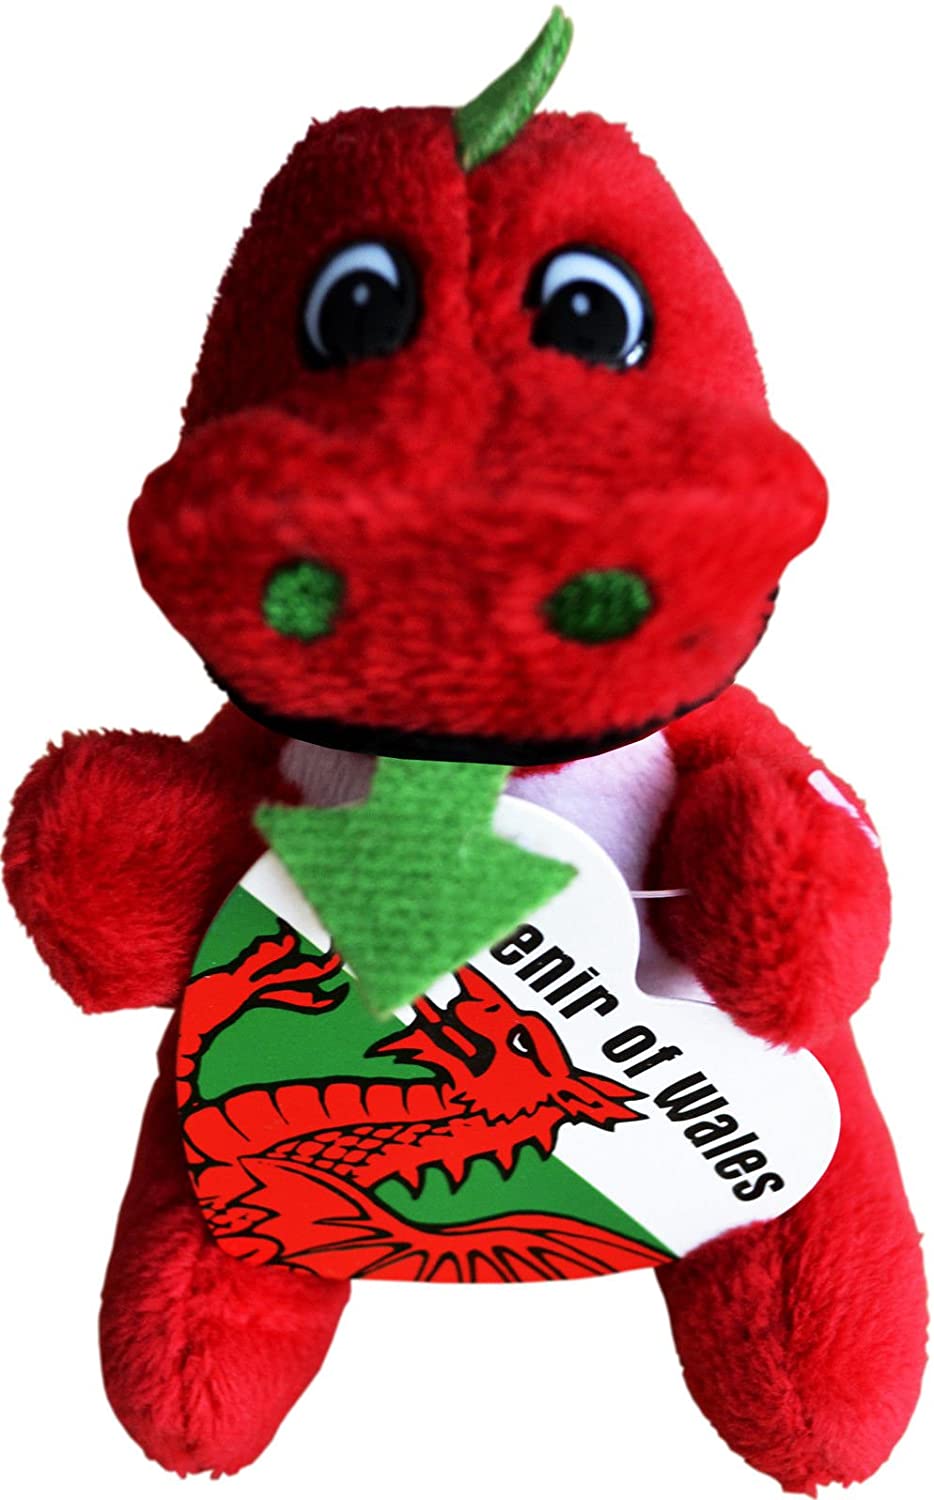 Dragon Souvenir of Wales Plush Toy